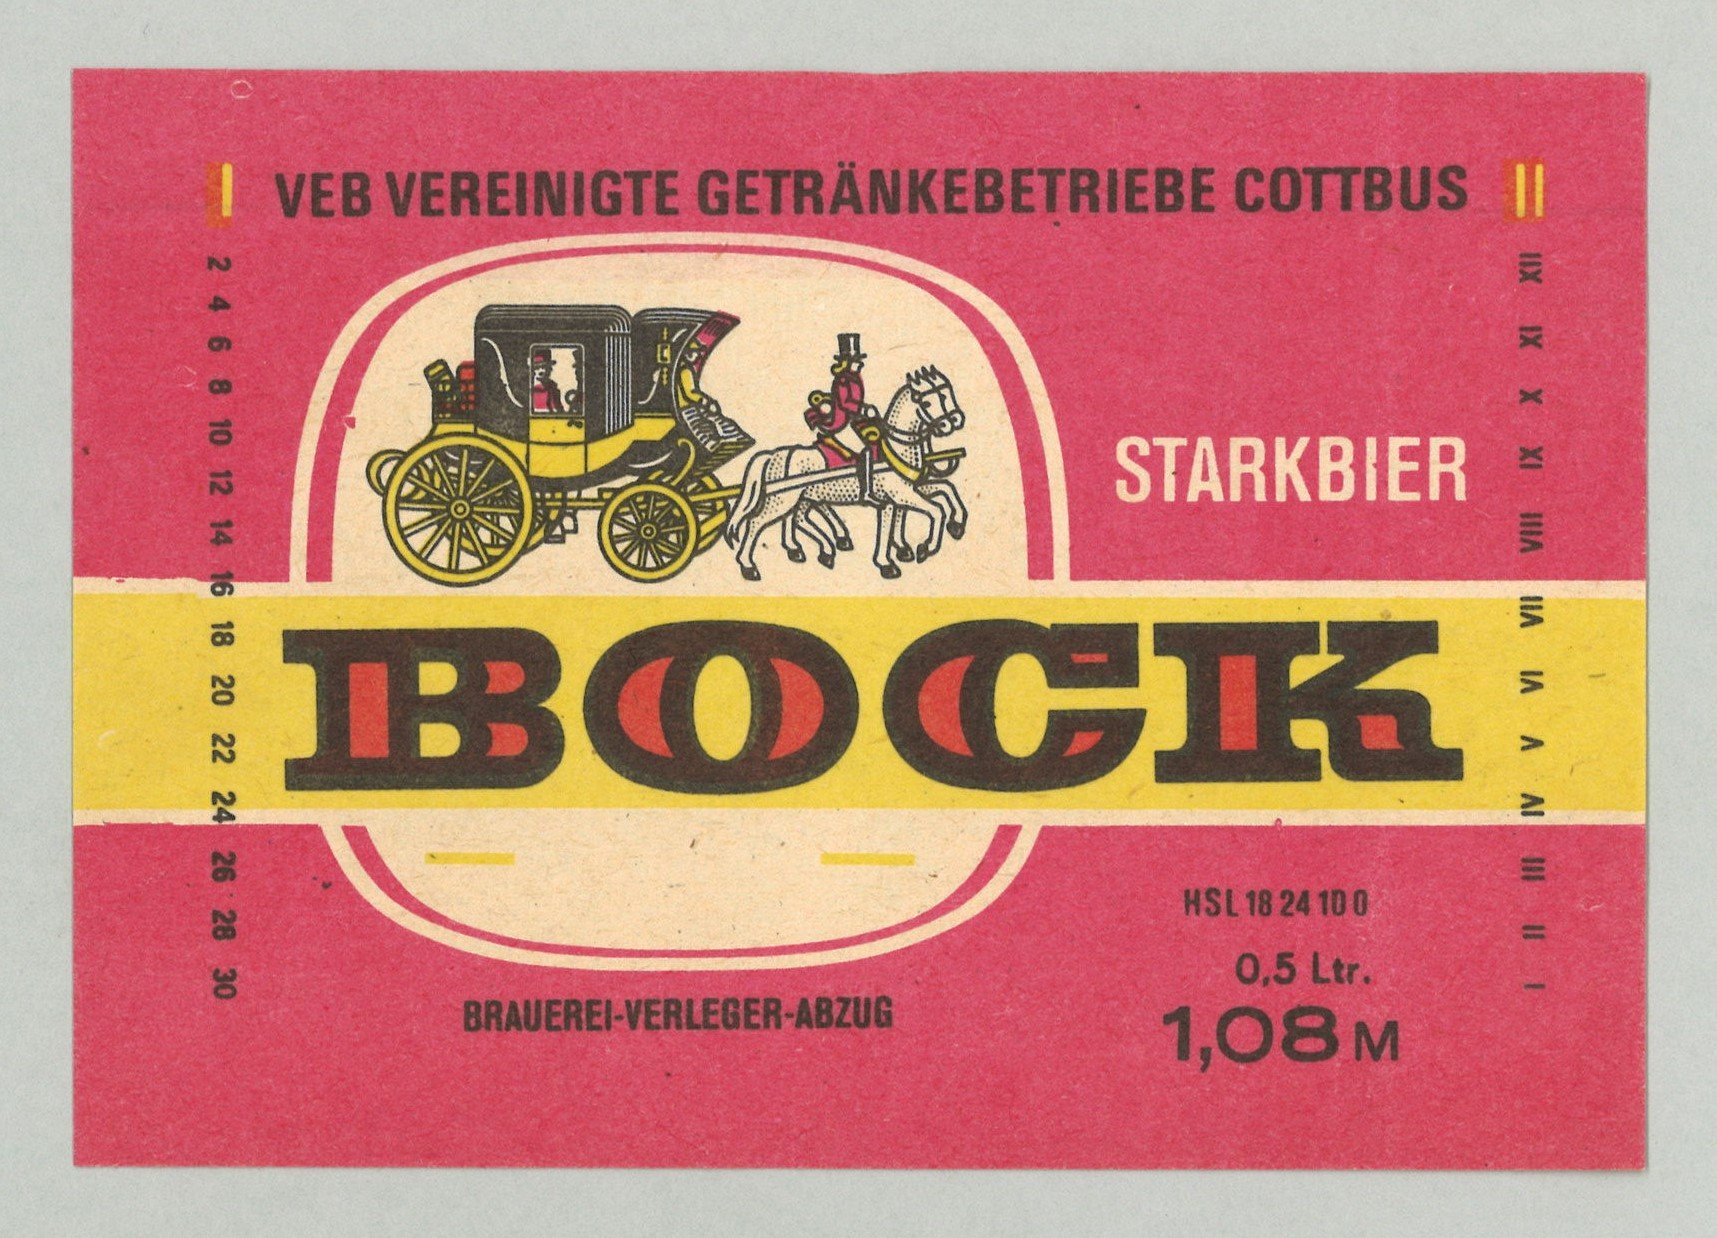 Starkbier des VEB Vereinigte Getränkebetriebe Cottbus (Landesgeschichtliche Vereinigung für die Mark Brandenburg e.V., Archiv CC BY)